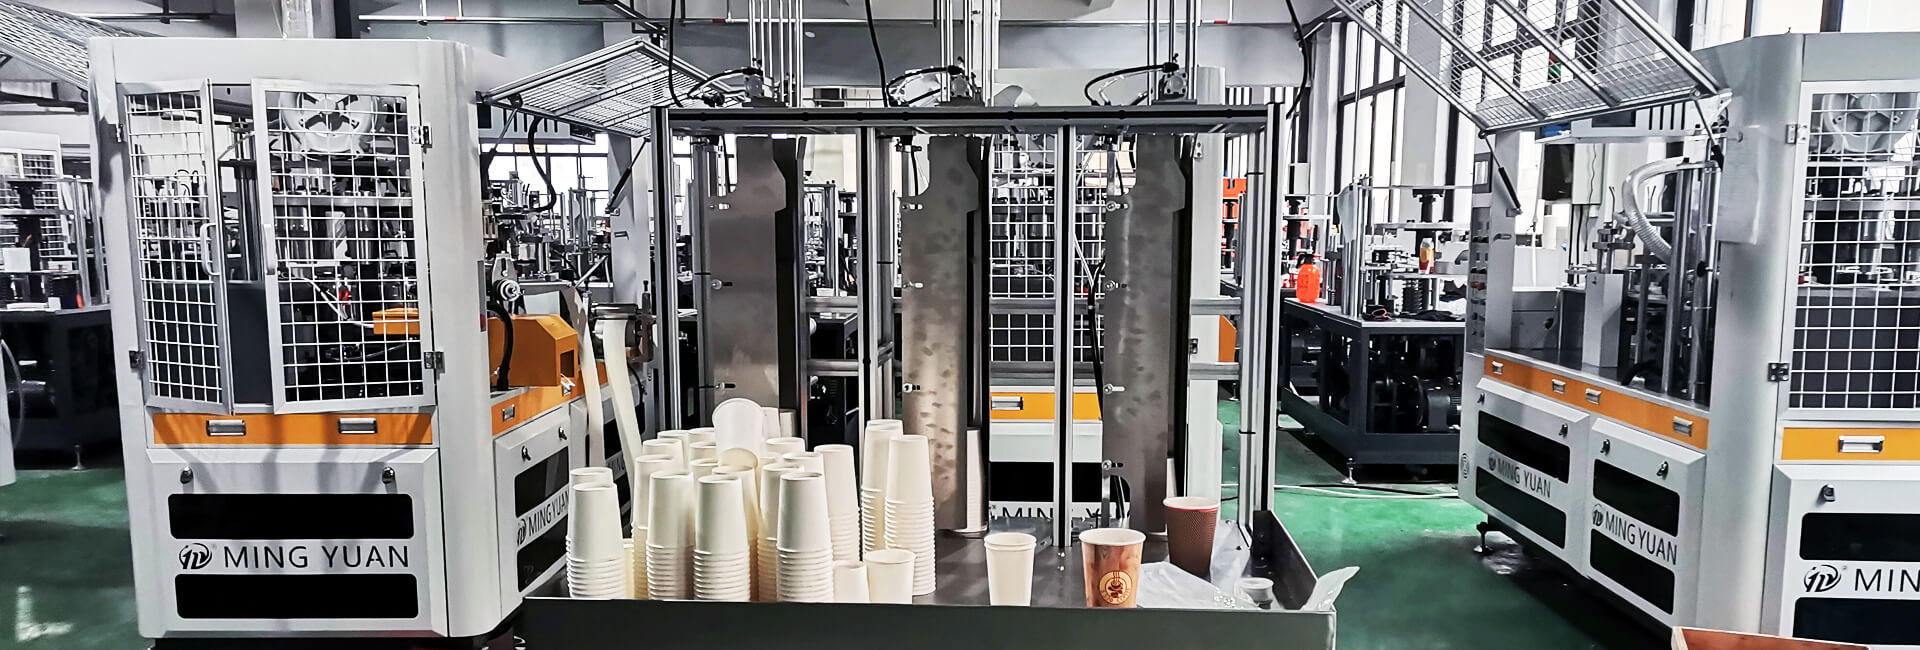 Mingyuan Disposable Paper Cup Machine